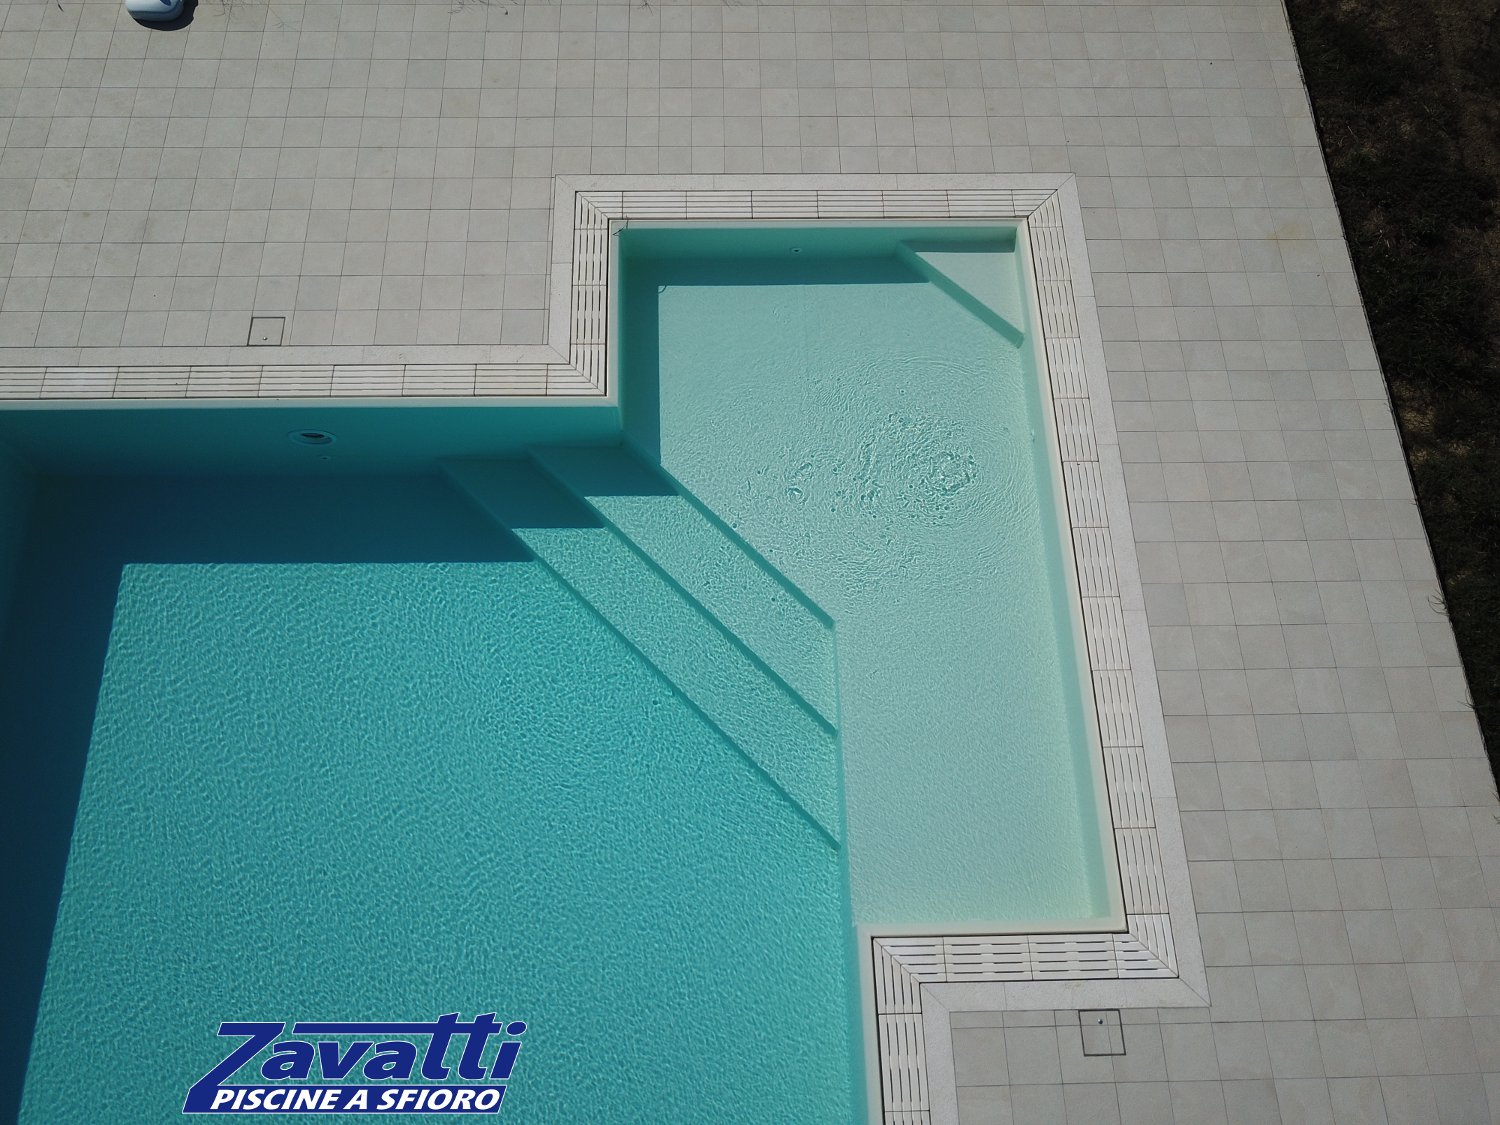 Dettaglio ingresso angolare di una piscina a sfioro con griglia in pietra ricostruita e rivestimento in PVC sabbia